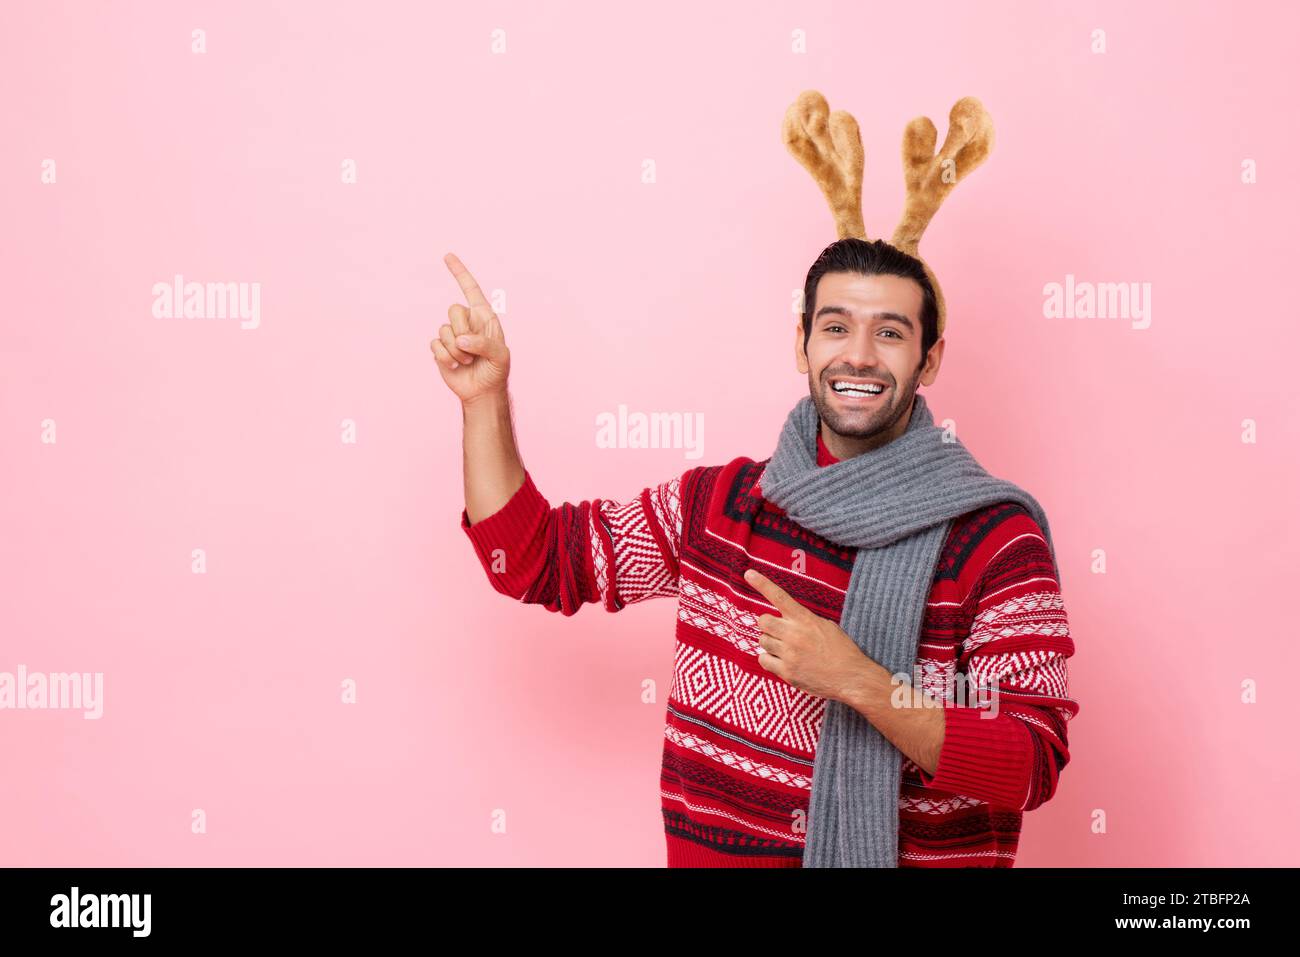 Das Weihnachts-Studio hat Porträt eines Kaukasiers mit Pullover und einem schicken Rentier-Stirnband aufgenommen, der die Hand in den Kopierraum in rosafarbenem, isoliertem Hintergrund zeigt Stockfoto